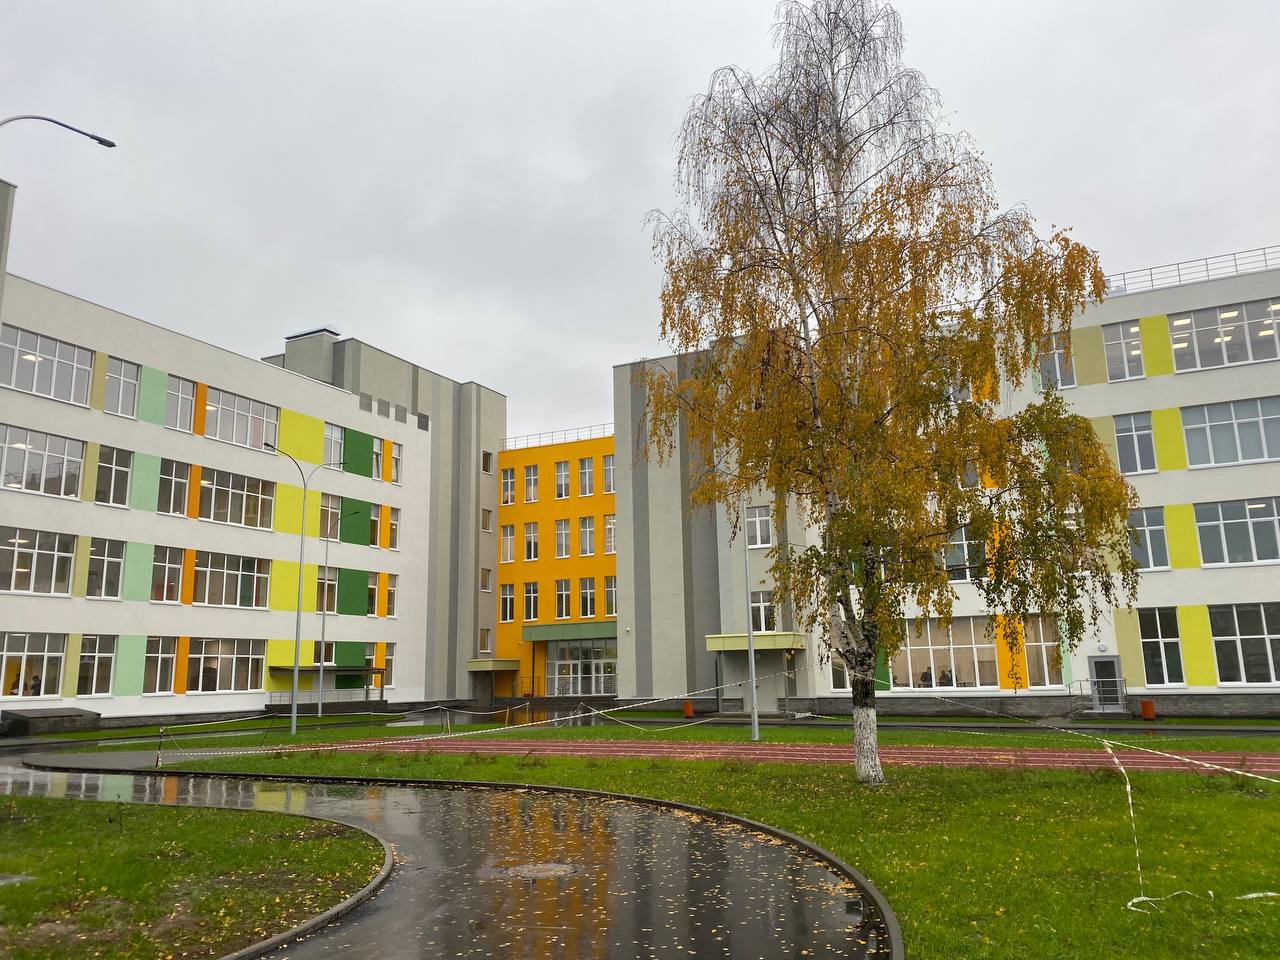 Три новые школы построены в Нижегородской области